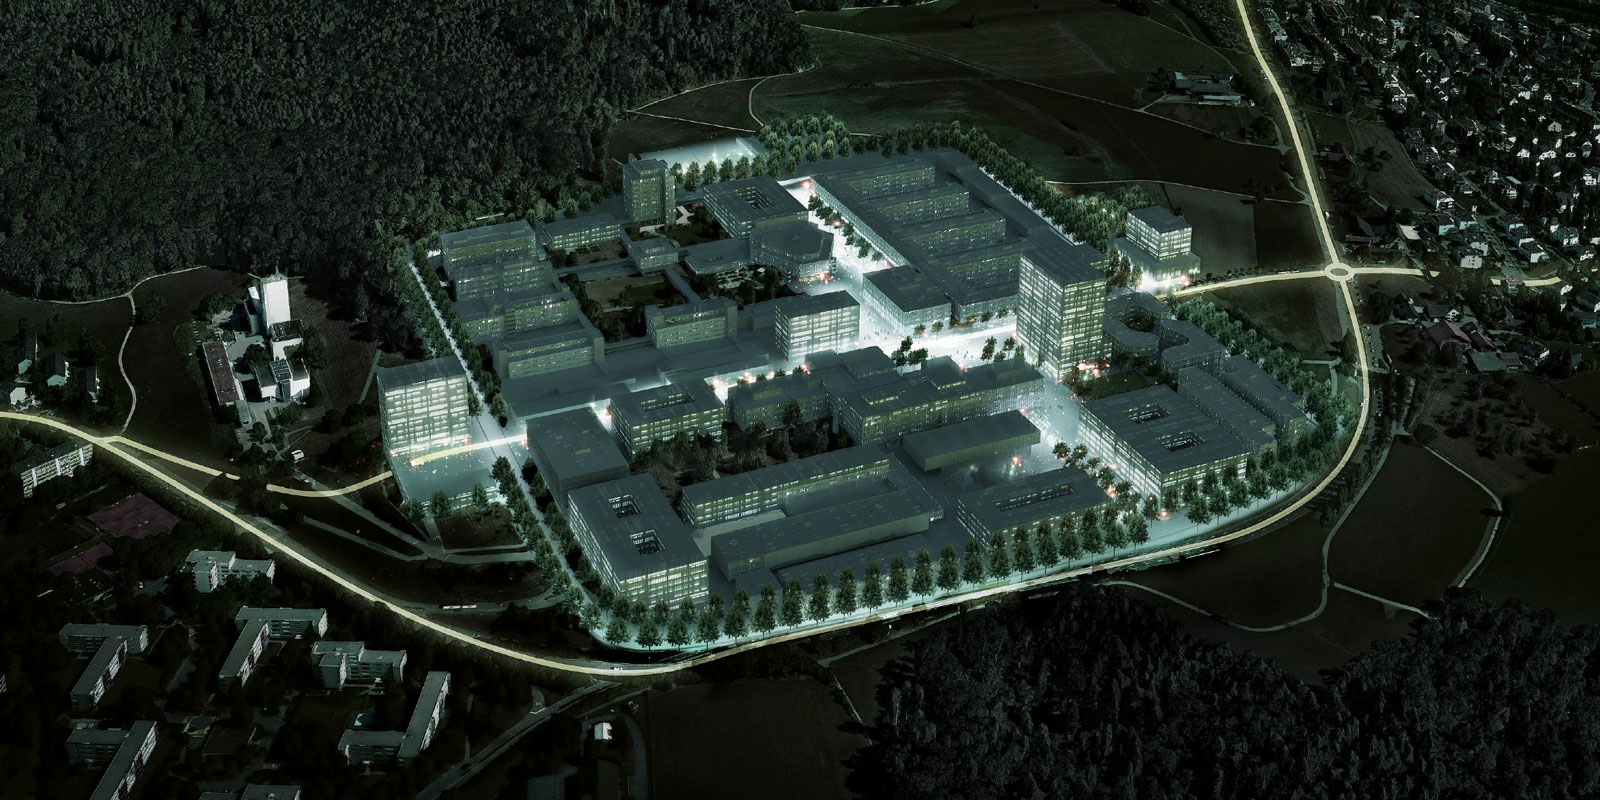 Vergrösserte Ansicht: Für die Zukunft der ETH ist der Campus Hönggerberg entscheidend: Die Vision ist ein attraktiver Campus mit Stadtquartier-​Charakter. (Visualisierung: EM2N)